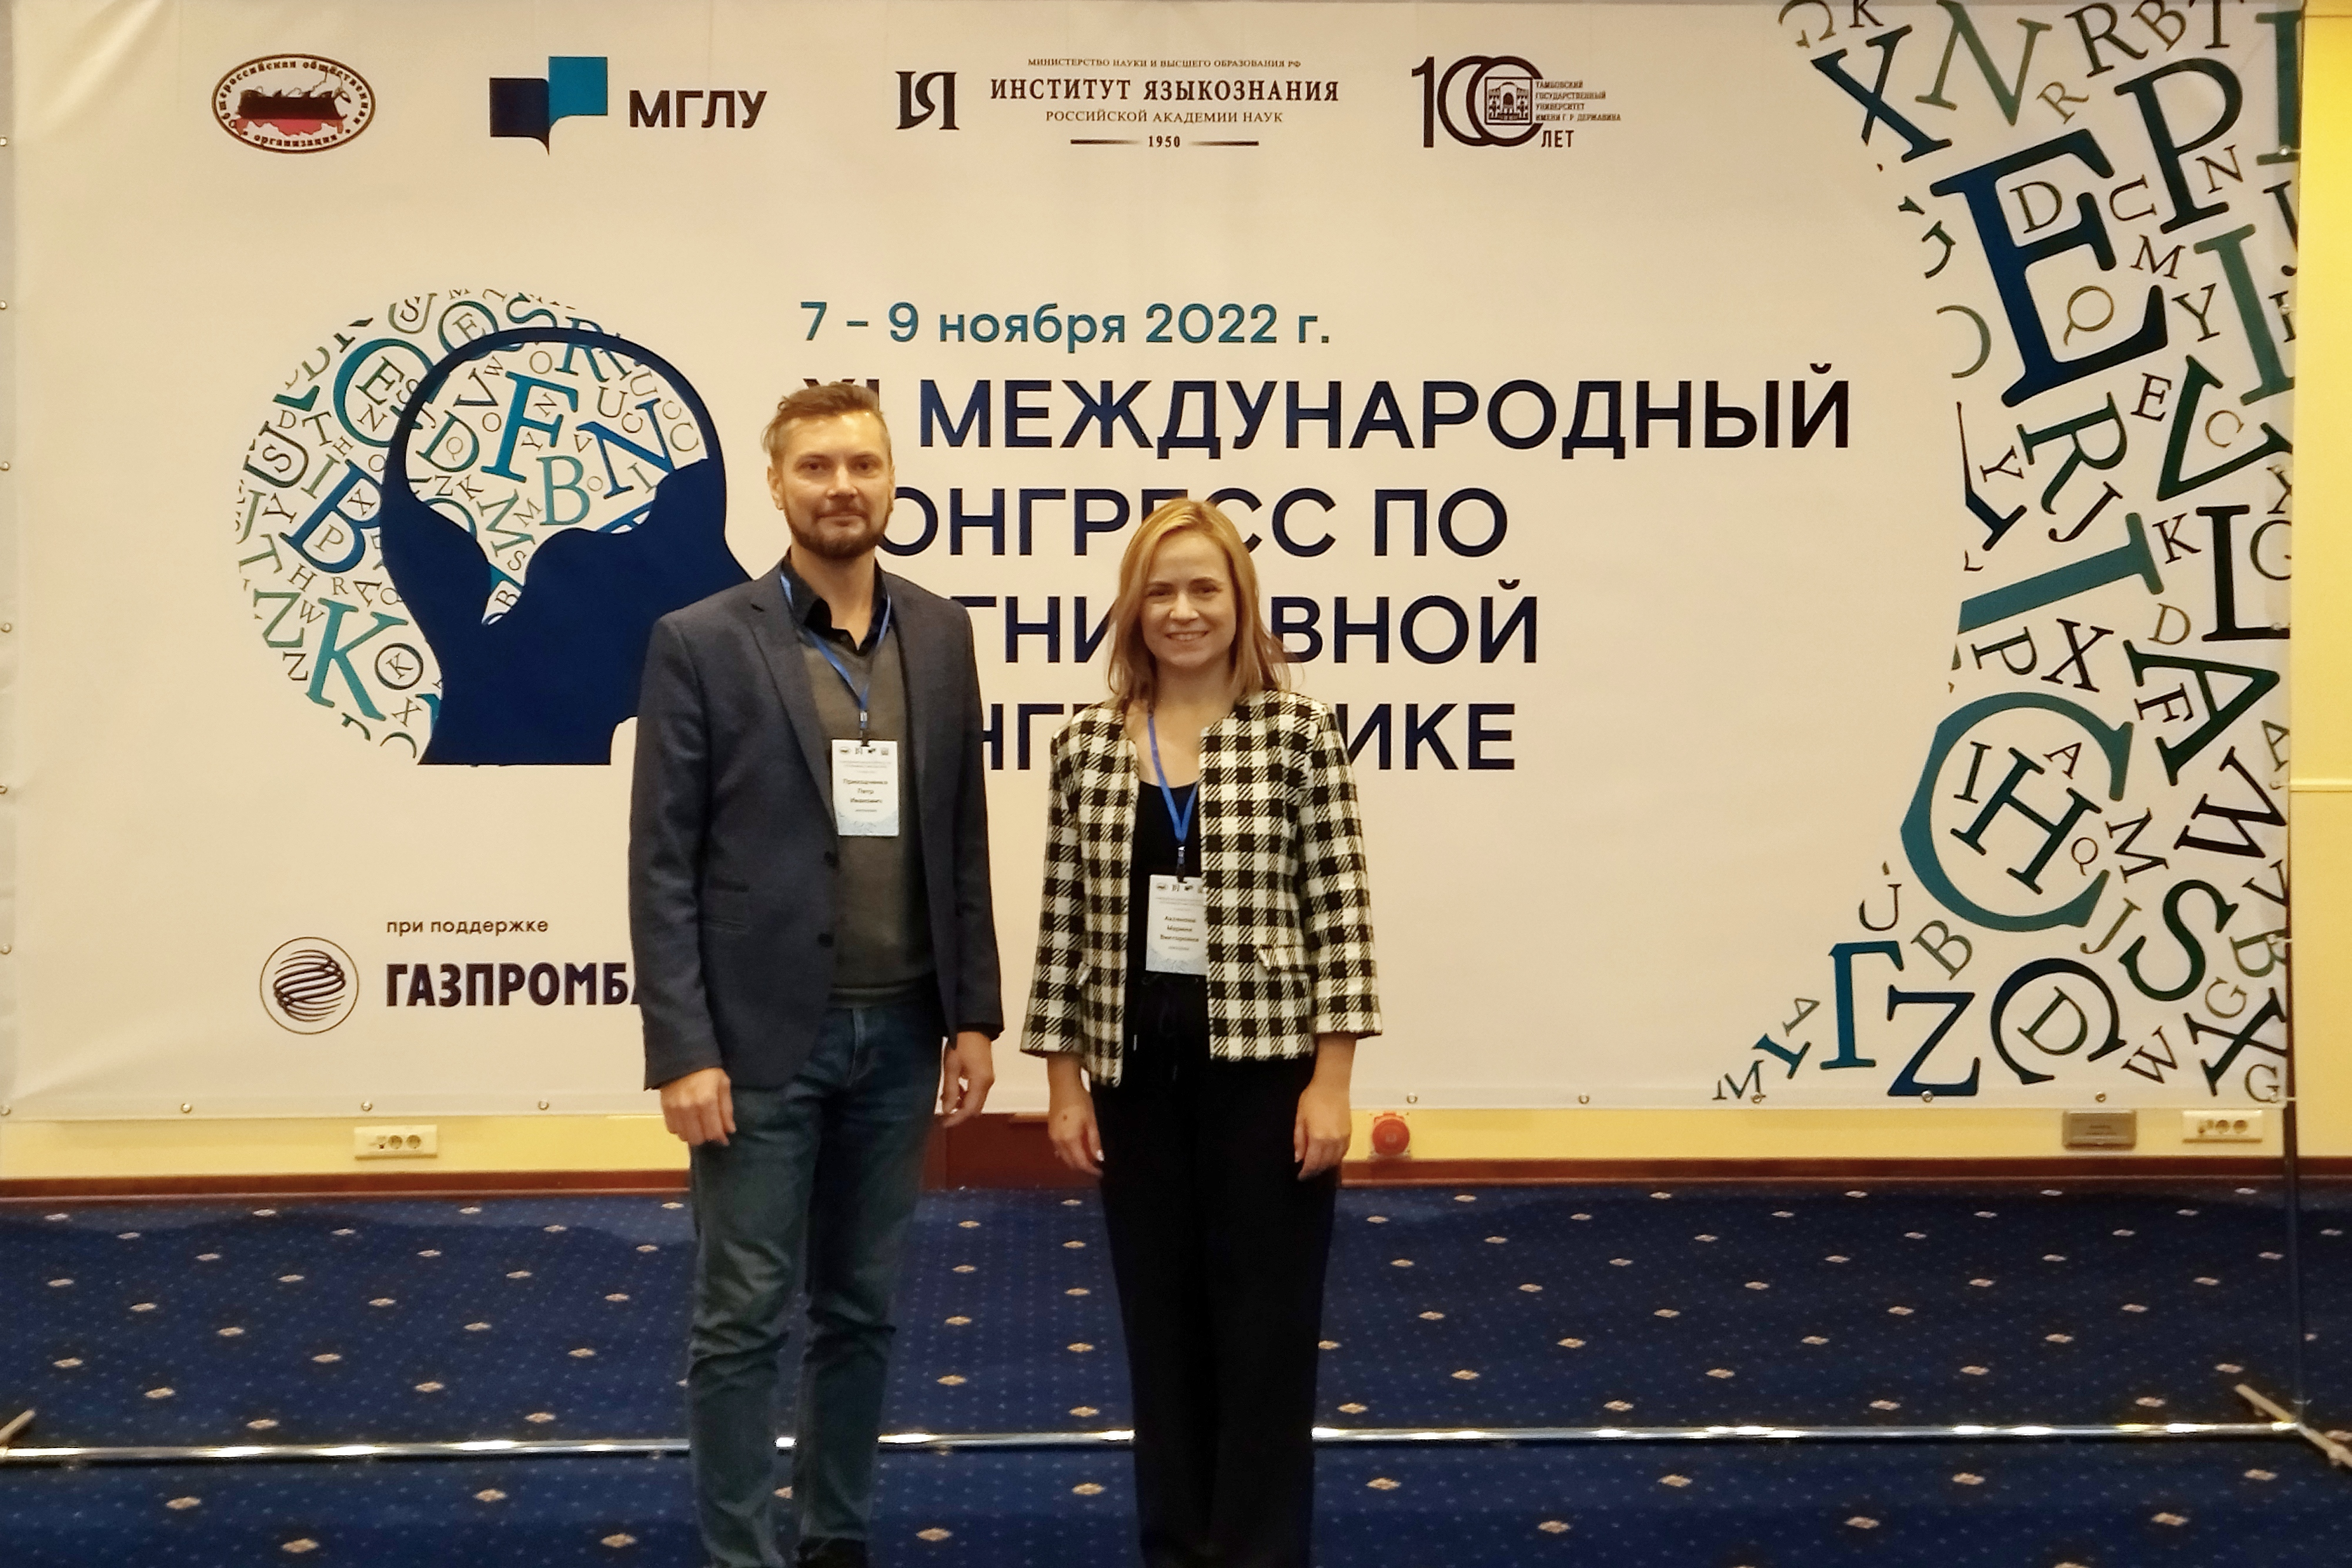 Команда Мининского выступила на XI международном конгрессе по когнитивной лингвистике